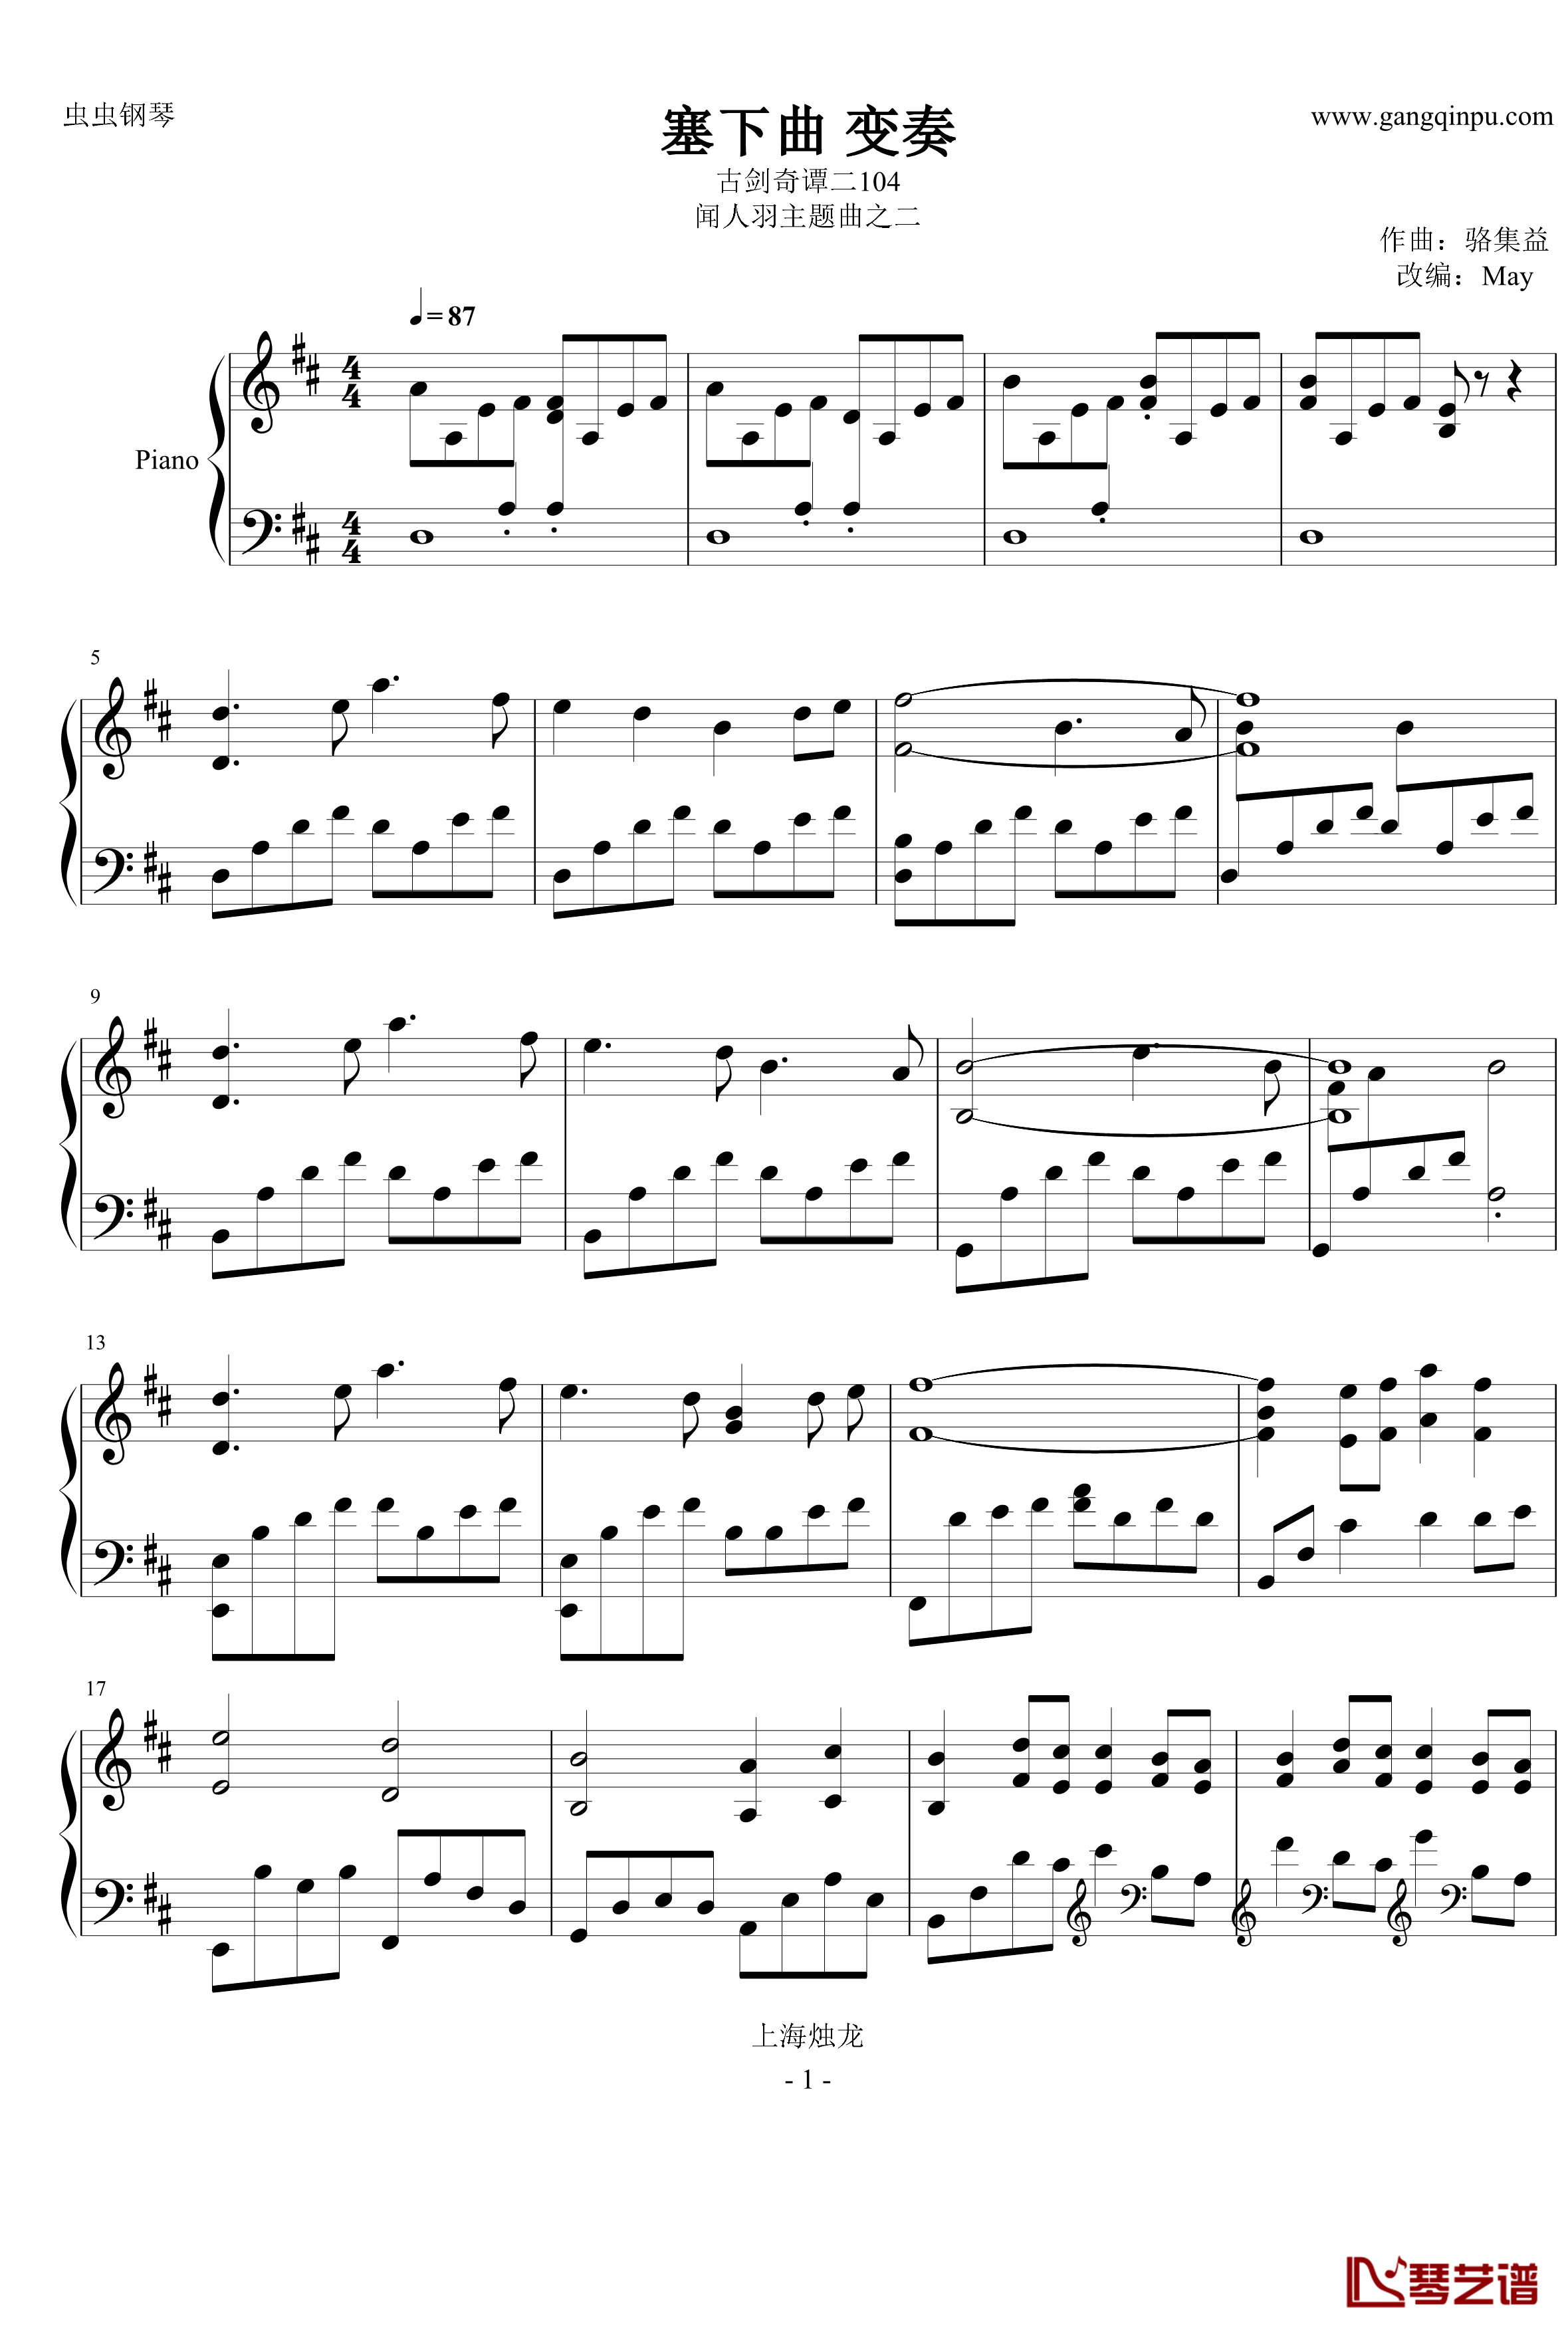 塞下曲·变奏钢琴谱-古剑奇谭二闻人羽主题之二-骆集益1